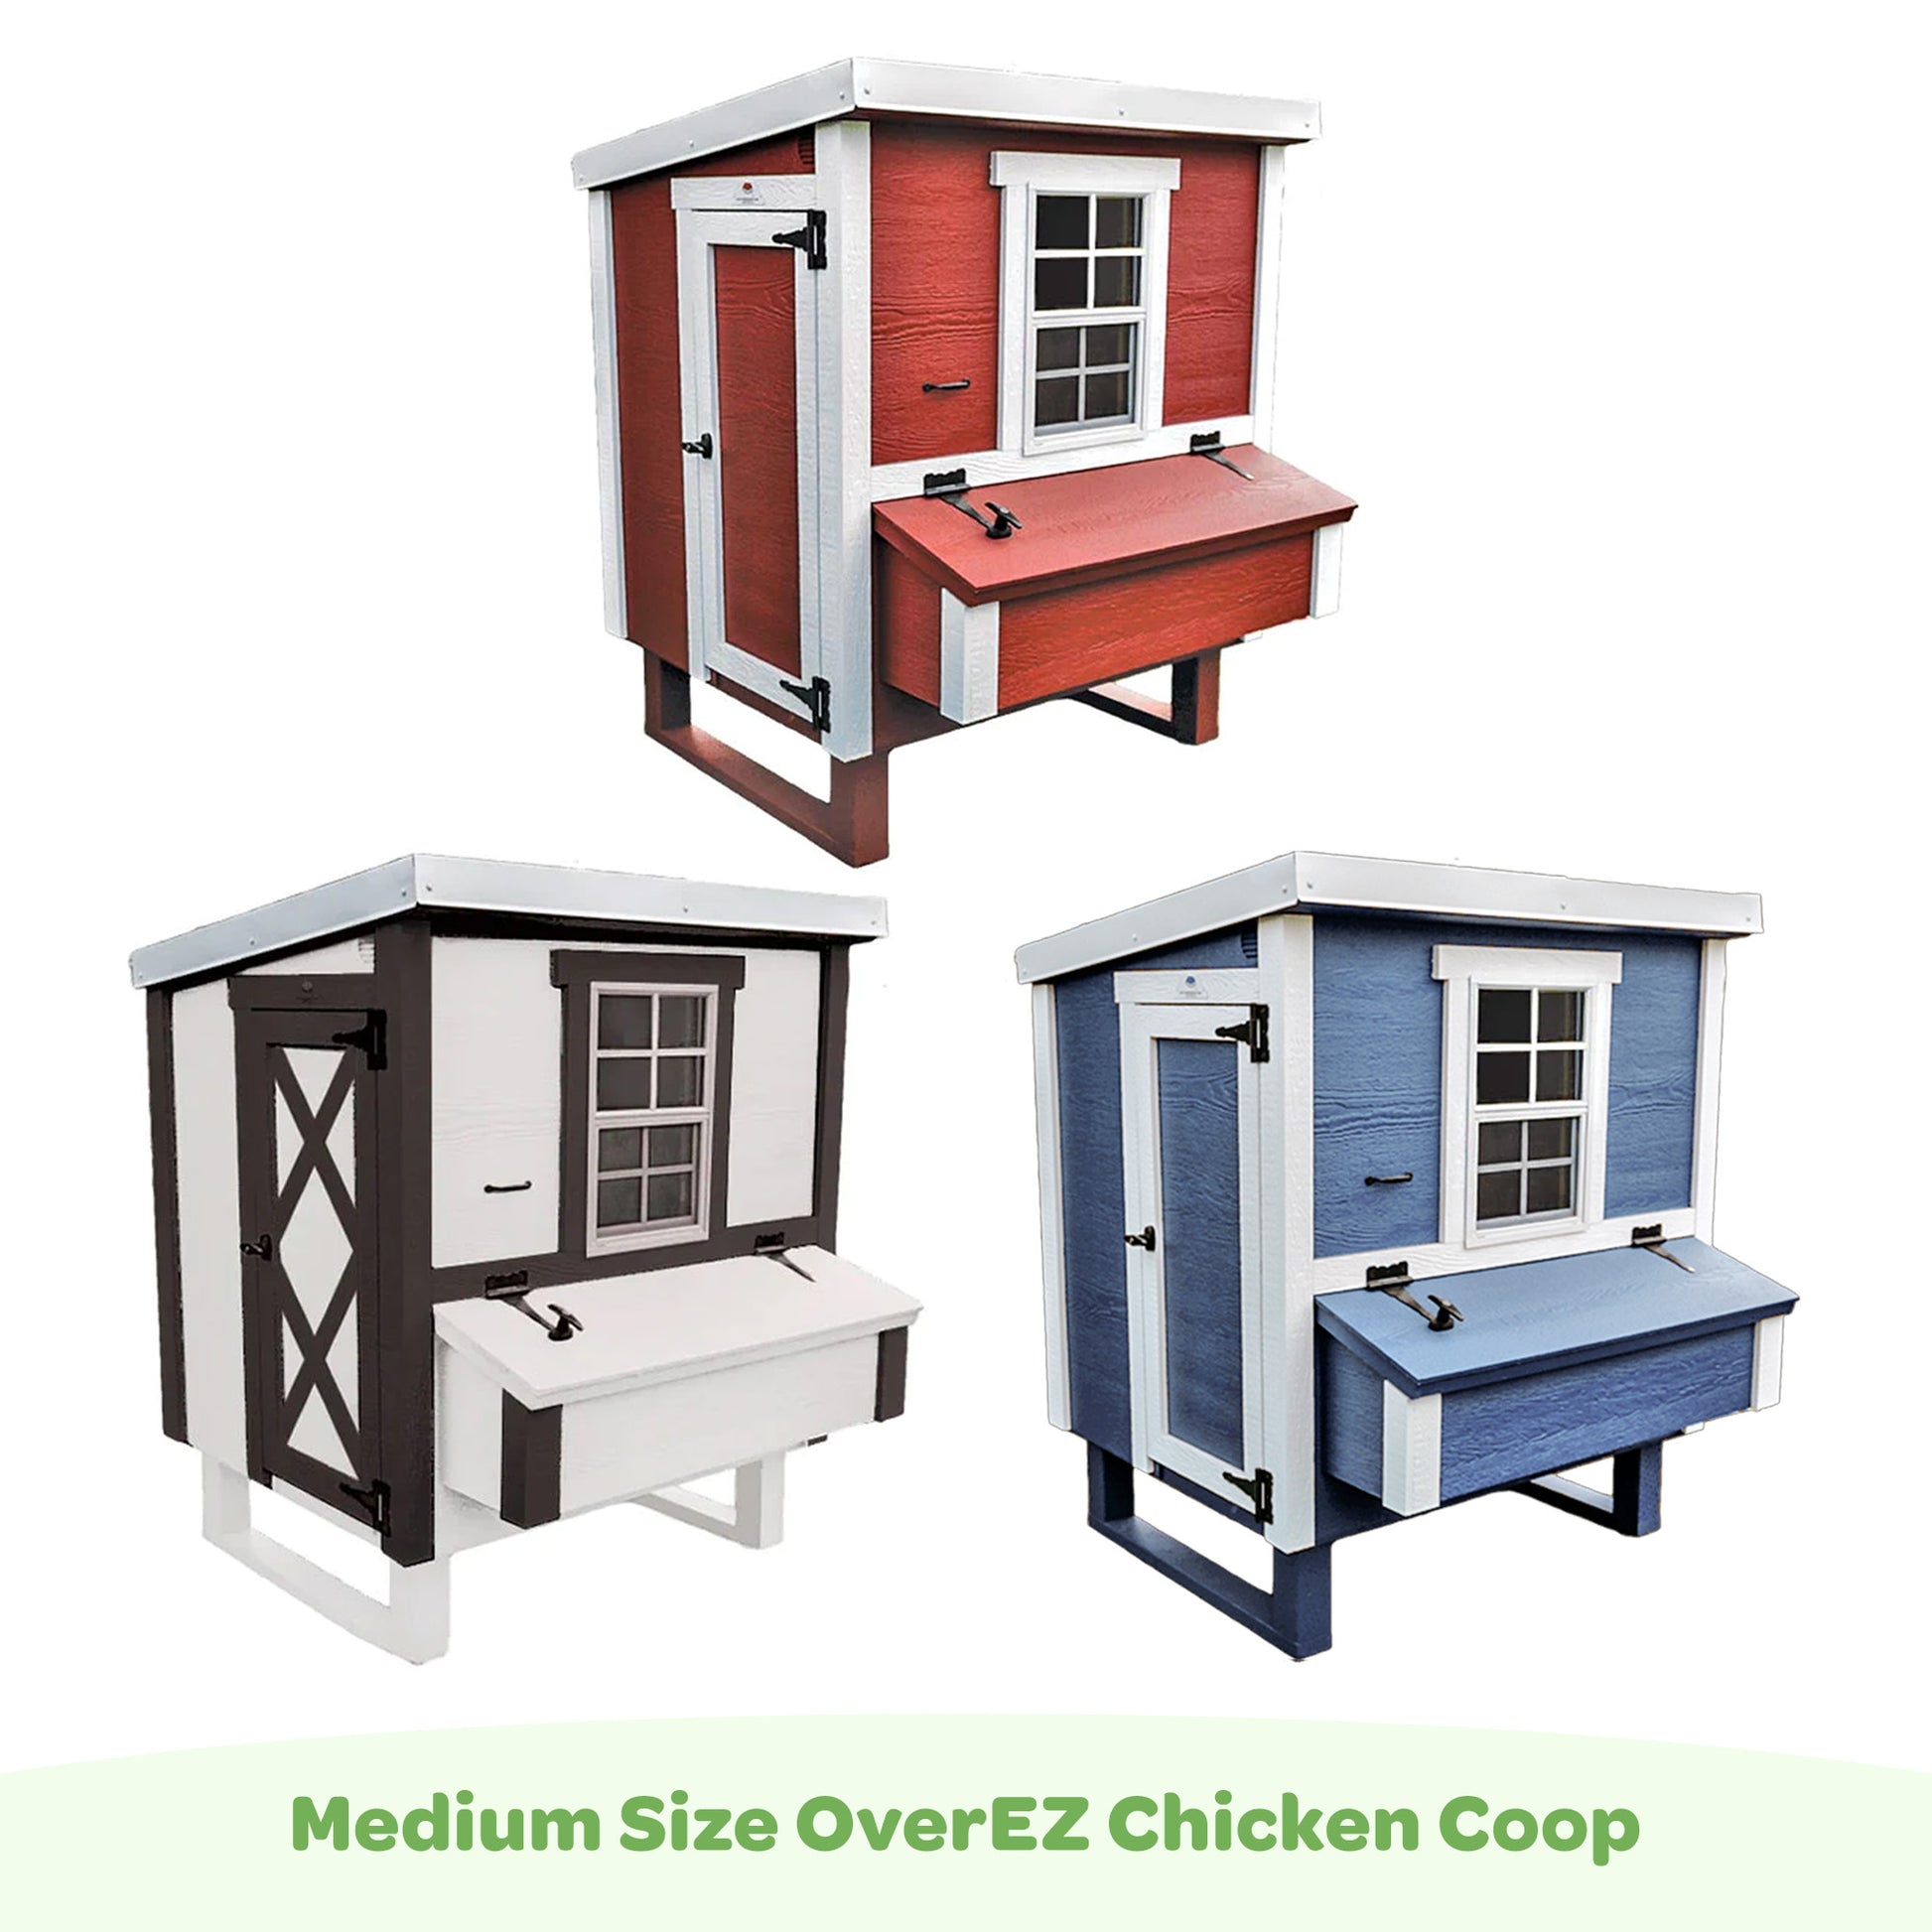 Medium OverEZ chicken coops